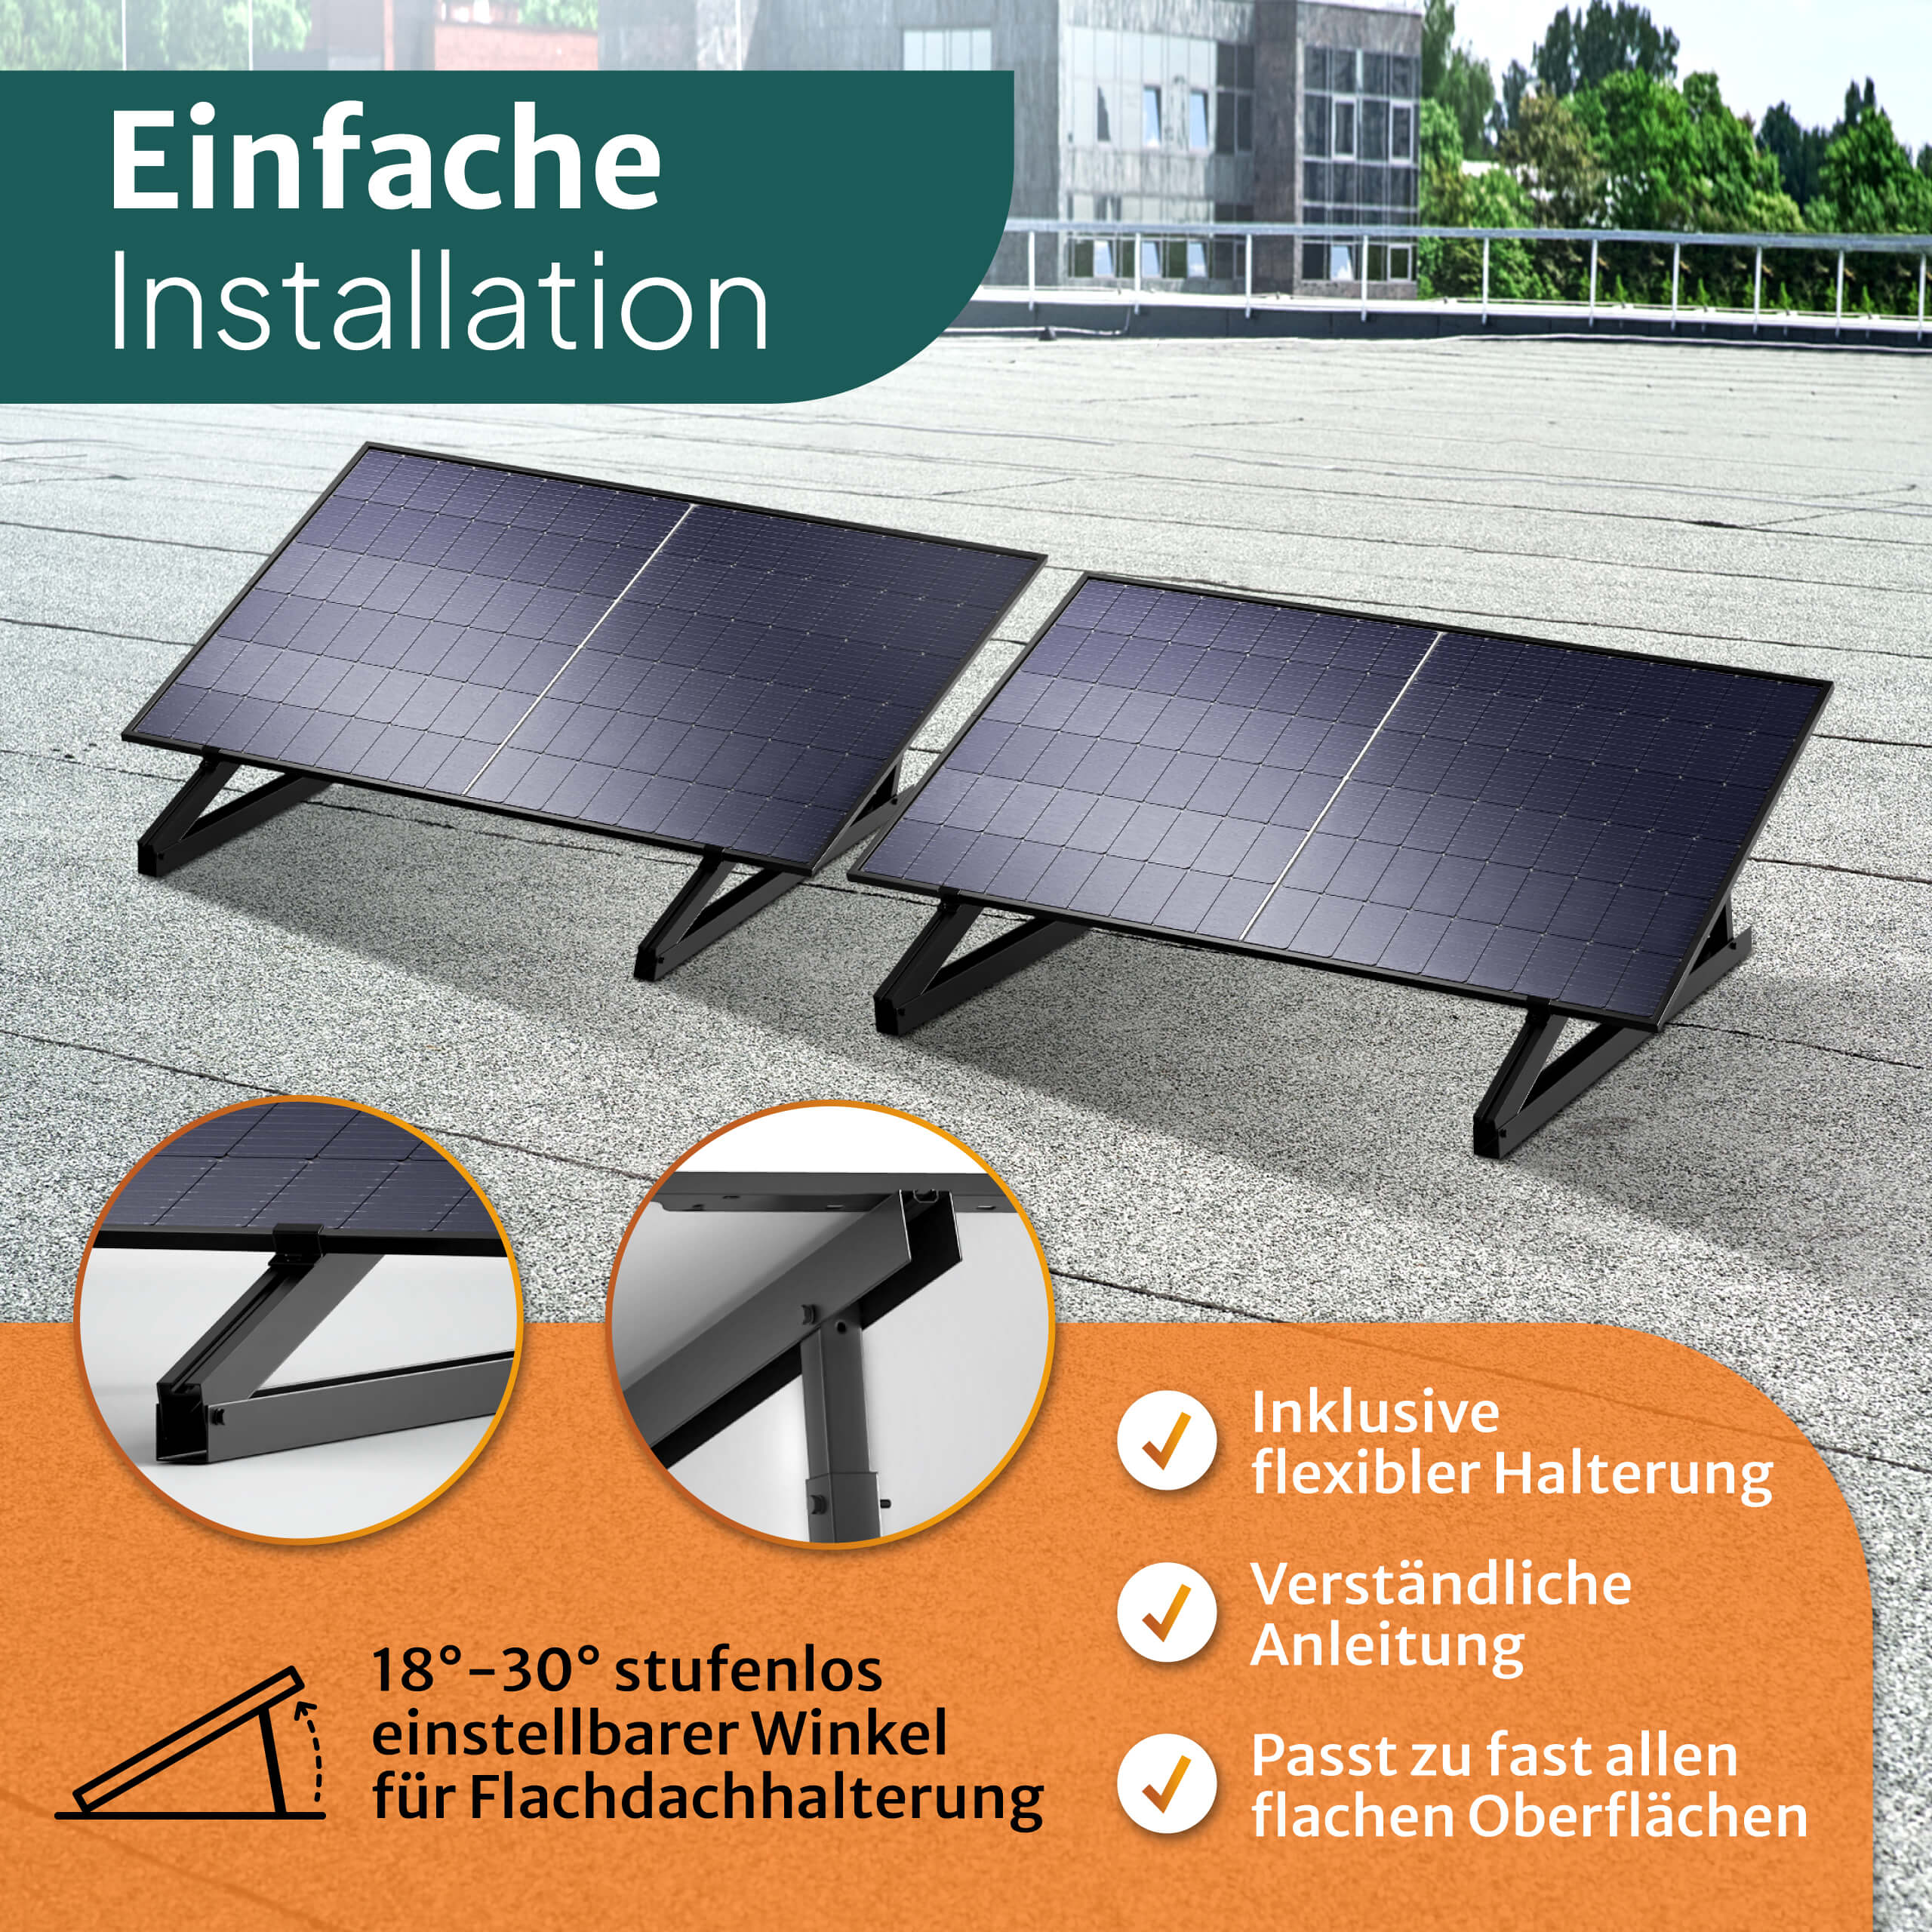 15m 1kWh mit Kabel Speicher Balkon-Solaranlage - Batterie STROMGANZEINFACH inkl. 850W Flachdach-Halterung